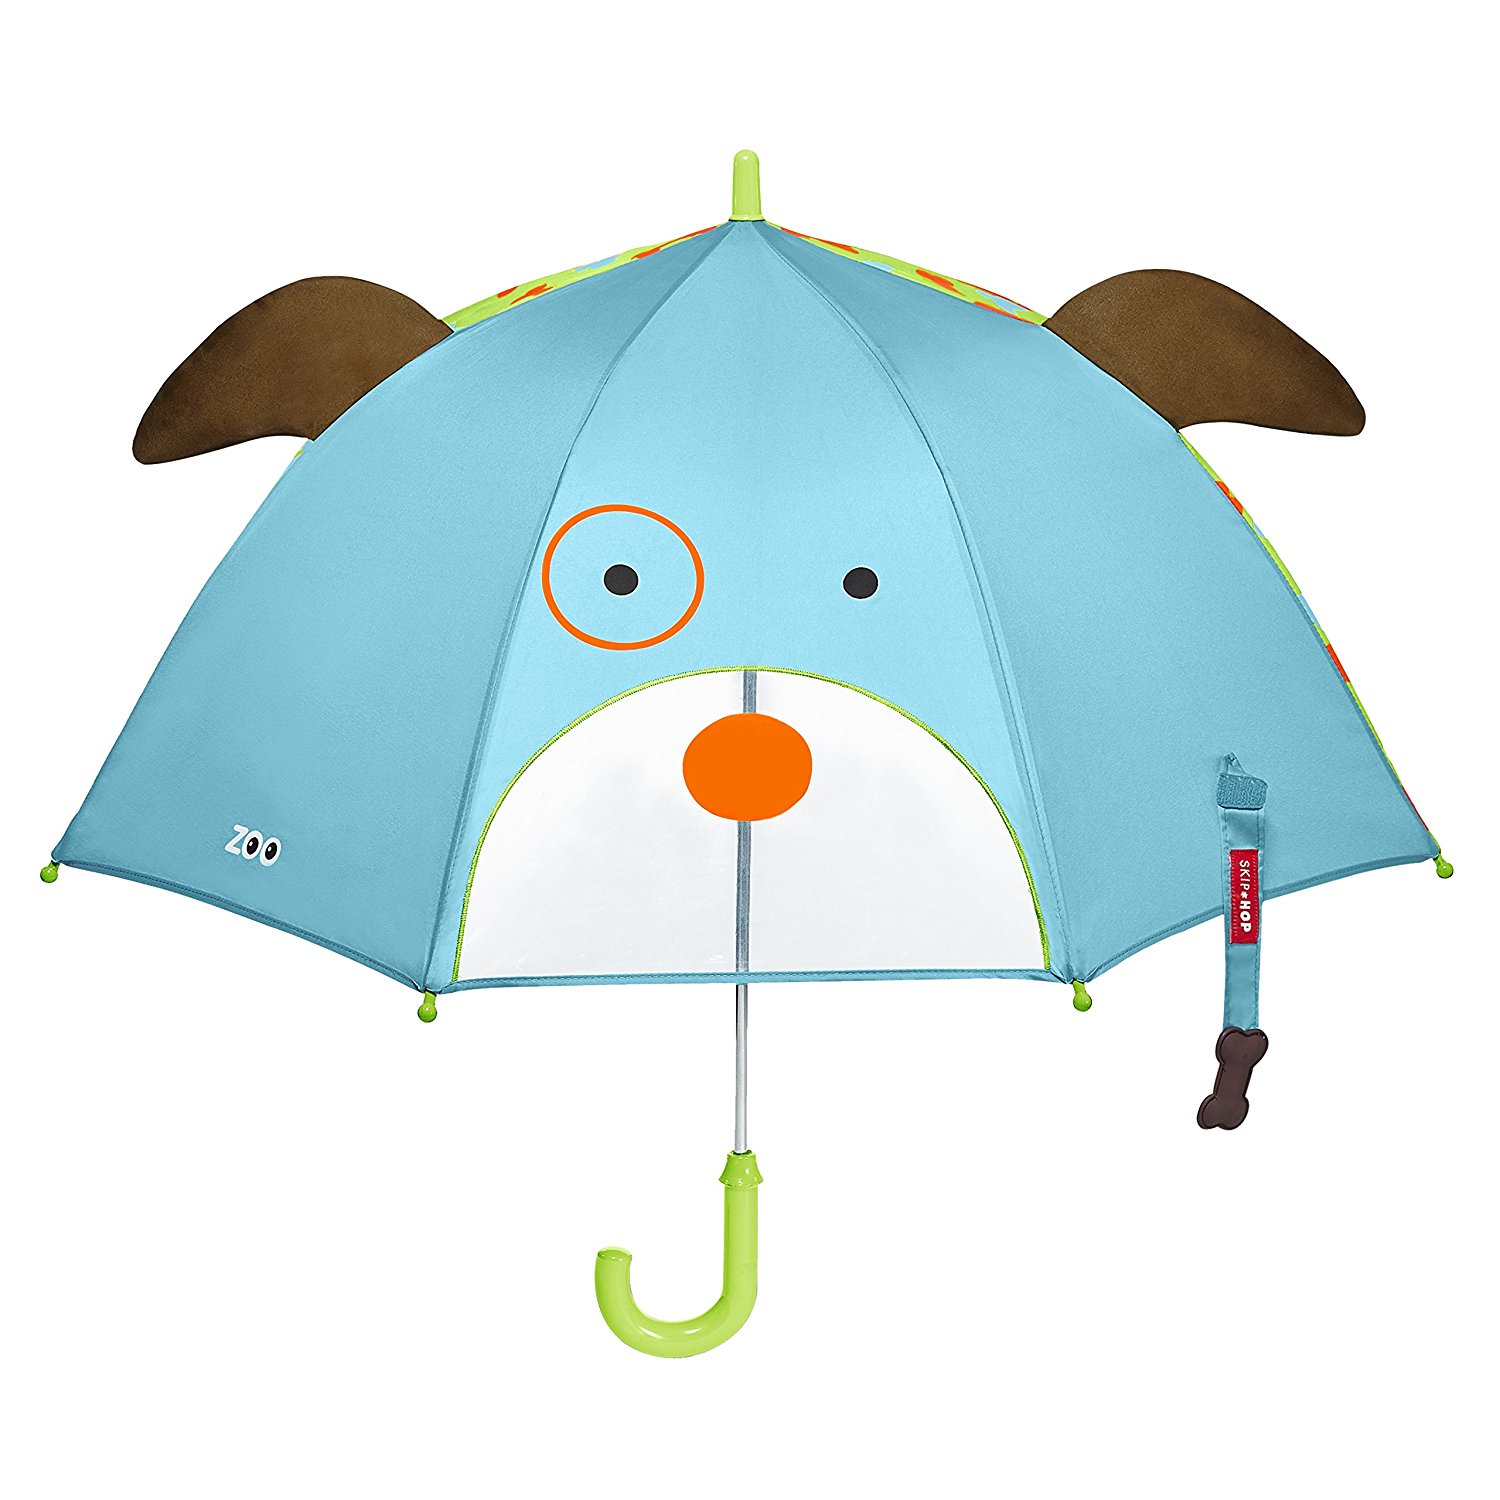 可爱动物园(美国的婴幼用品品牌) 美国skip hop可爱动物园小童雨伞